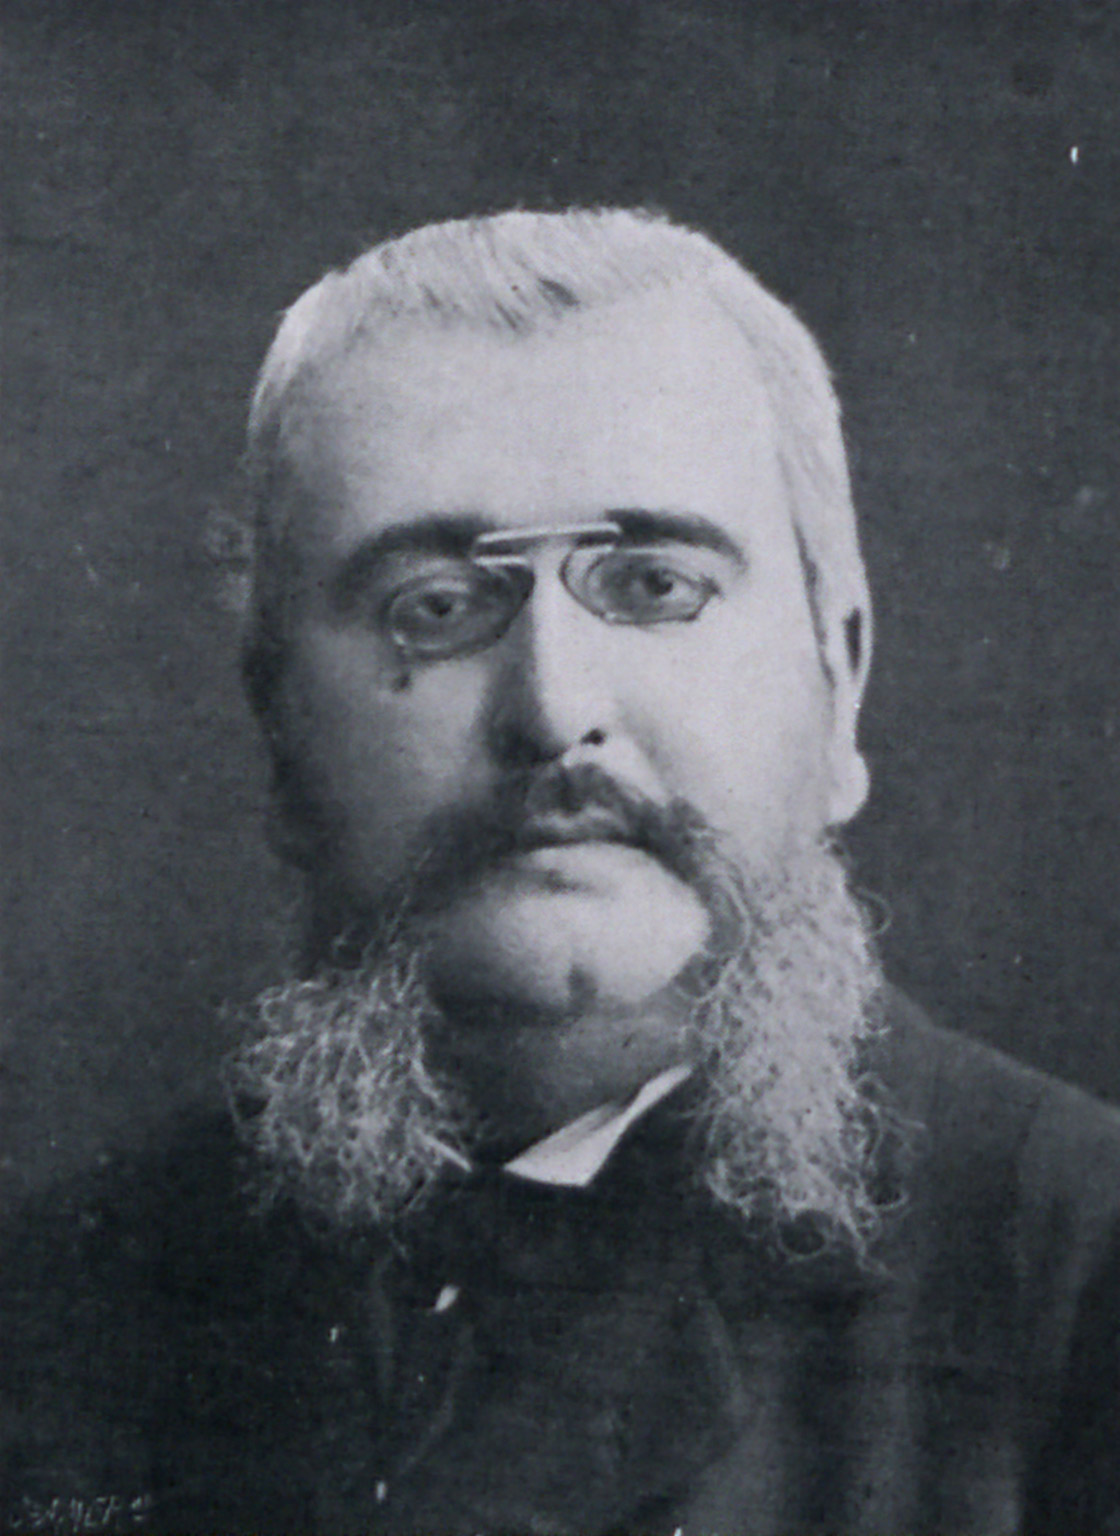 Portrait de Francis de Pressensé in Les défenseurs de la justice : affaire Dreyfus,  1899